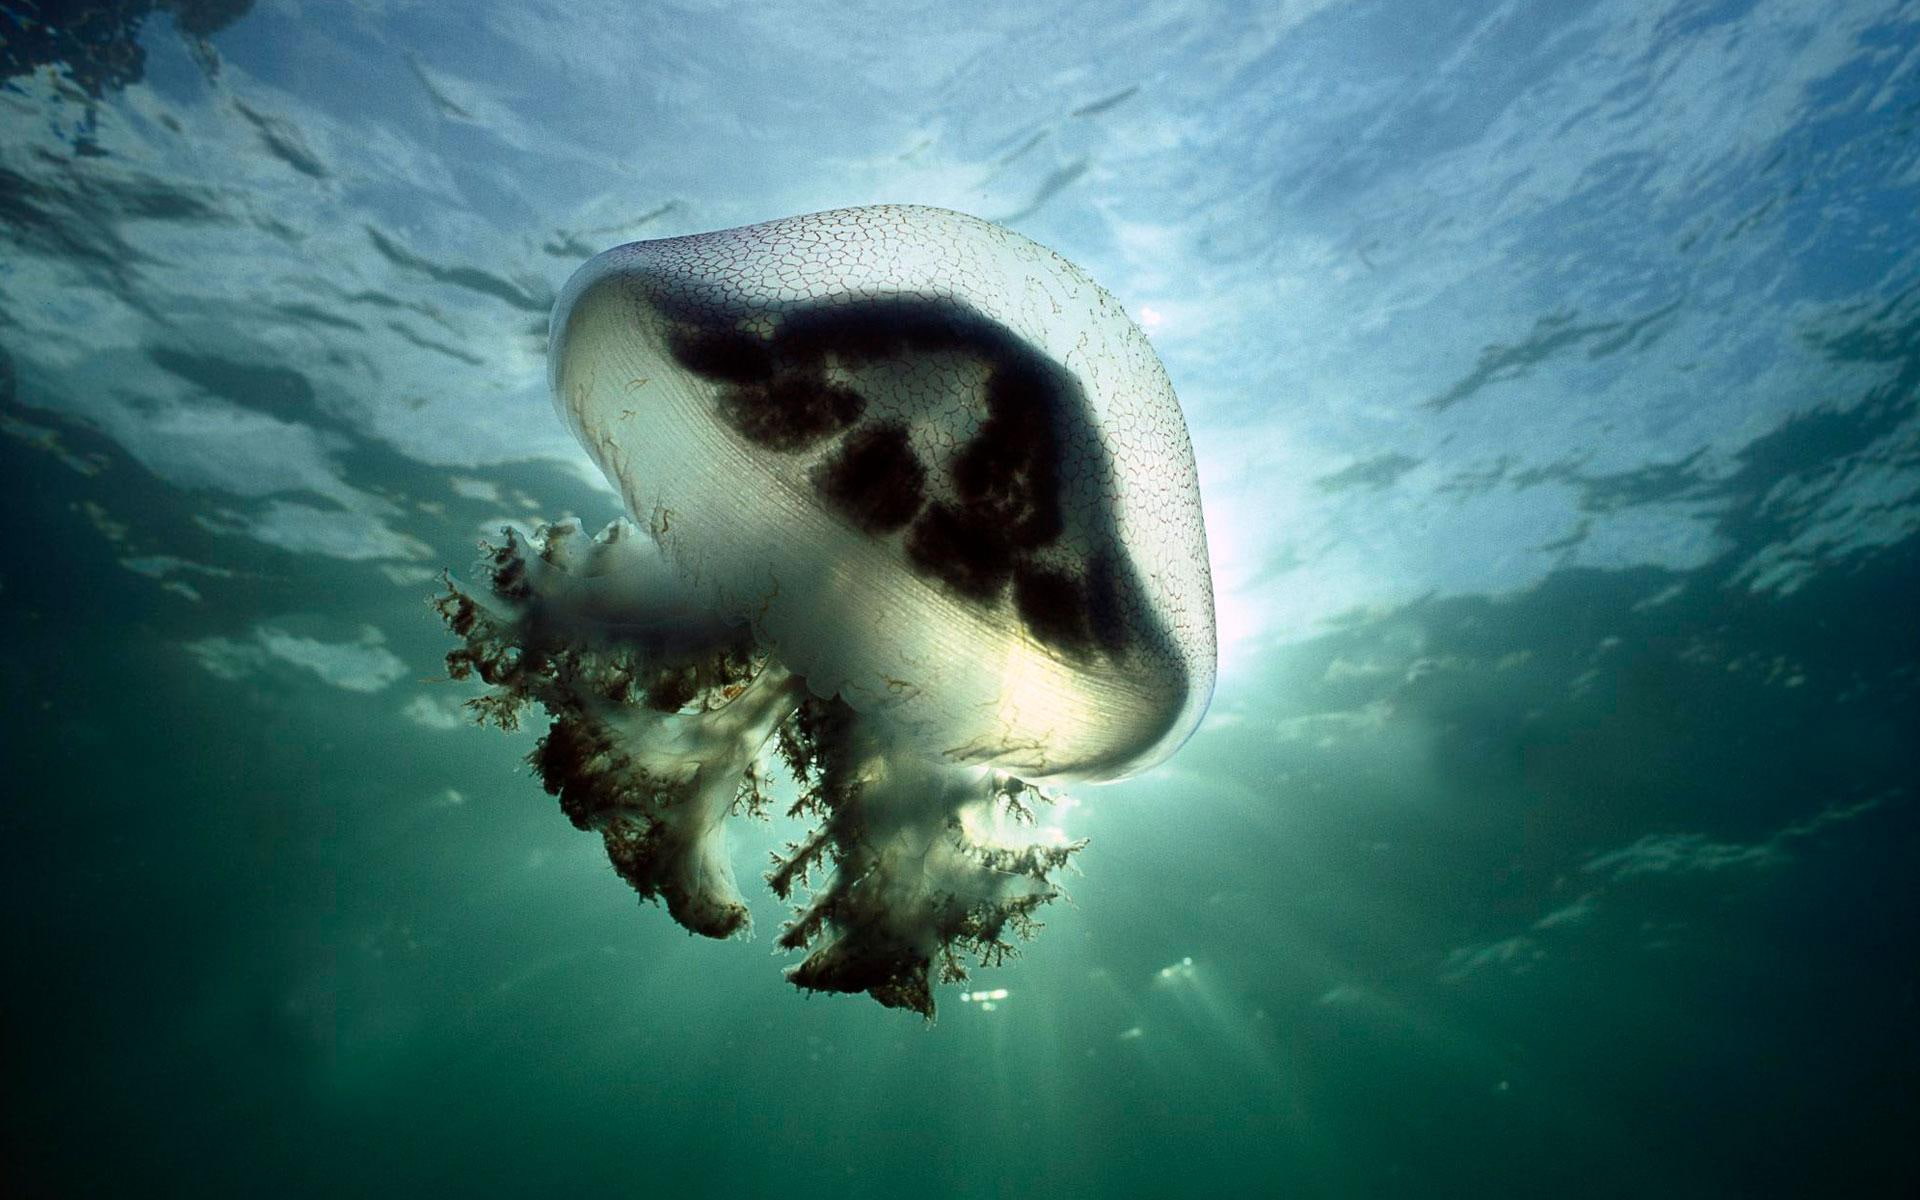 Mauve Stinger Jellyfish Australia, black and white jelly fish